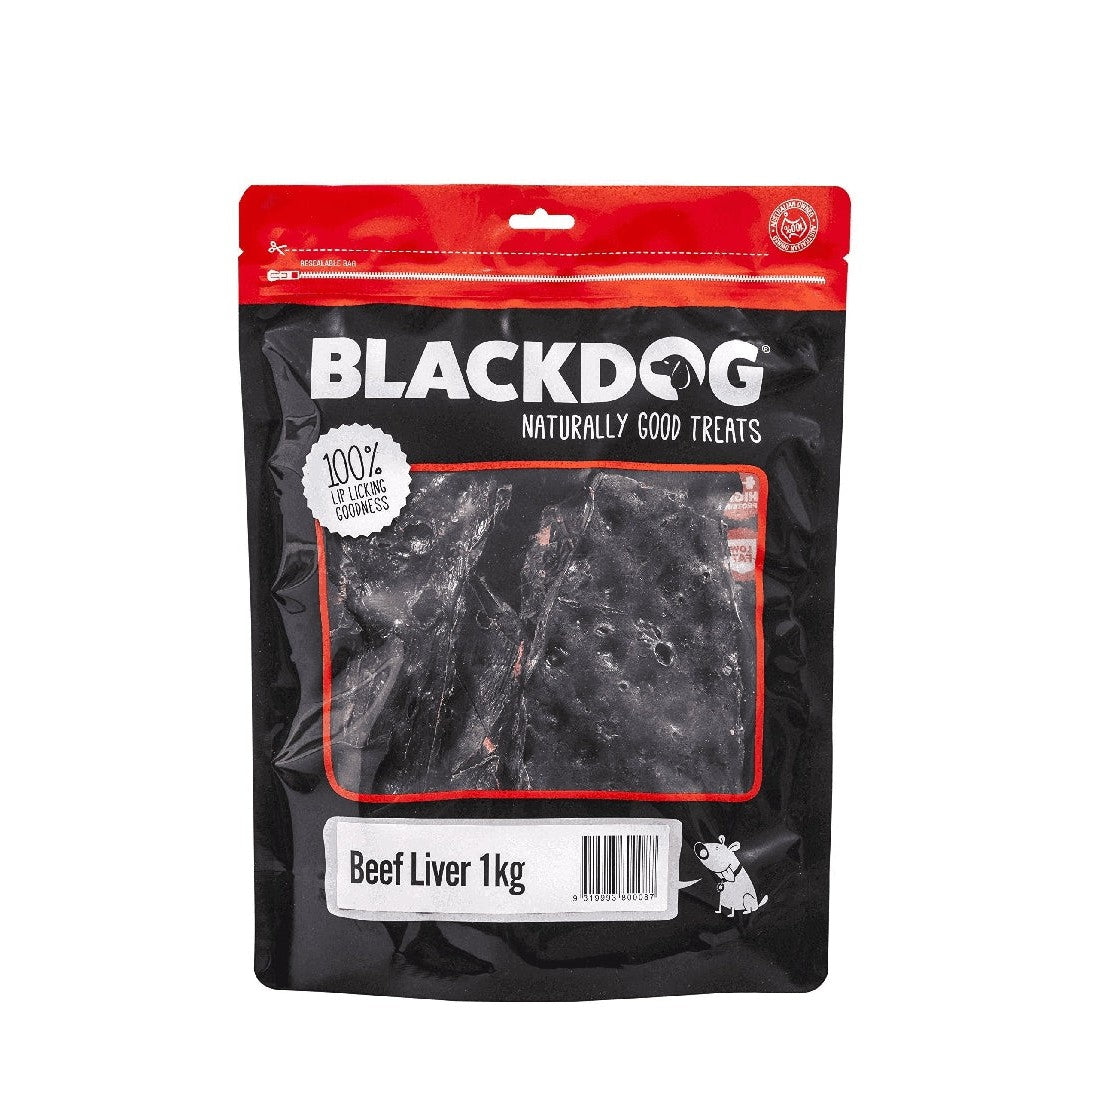 Blackdog Beef Liver 1kg dog treats in sealed packaging.